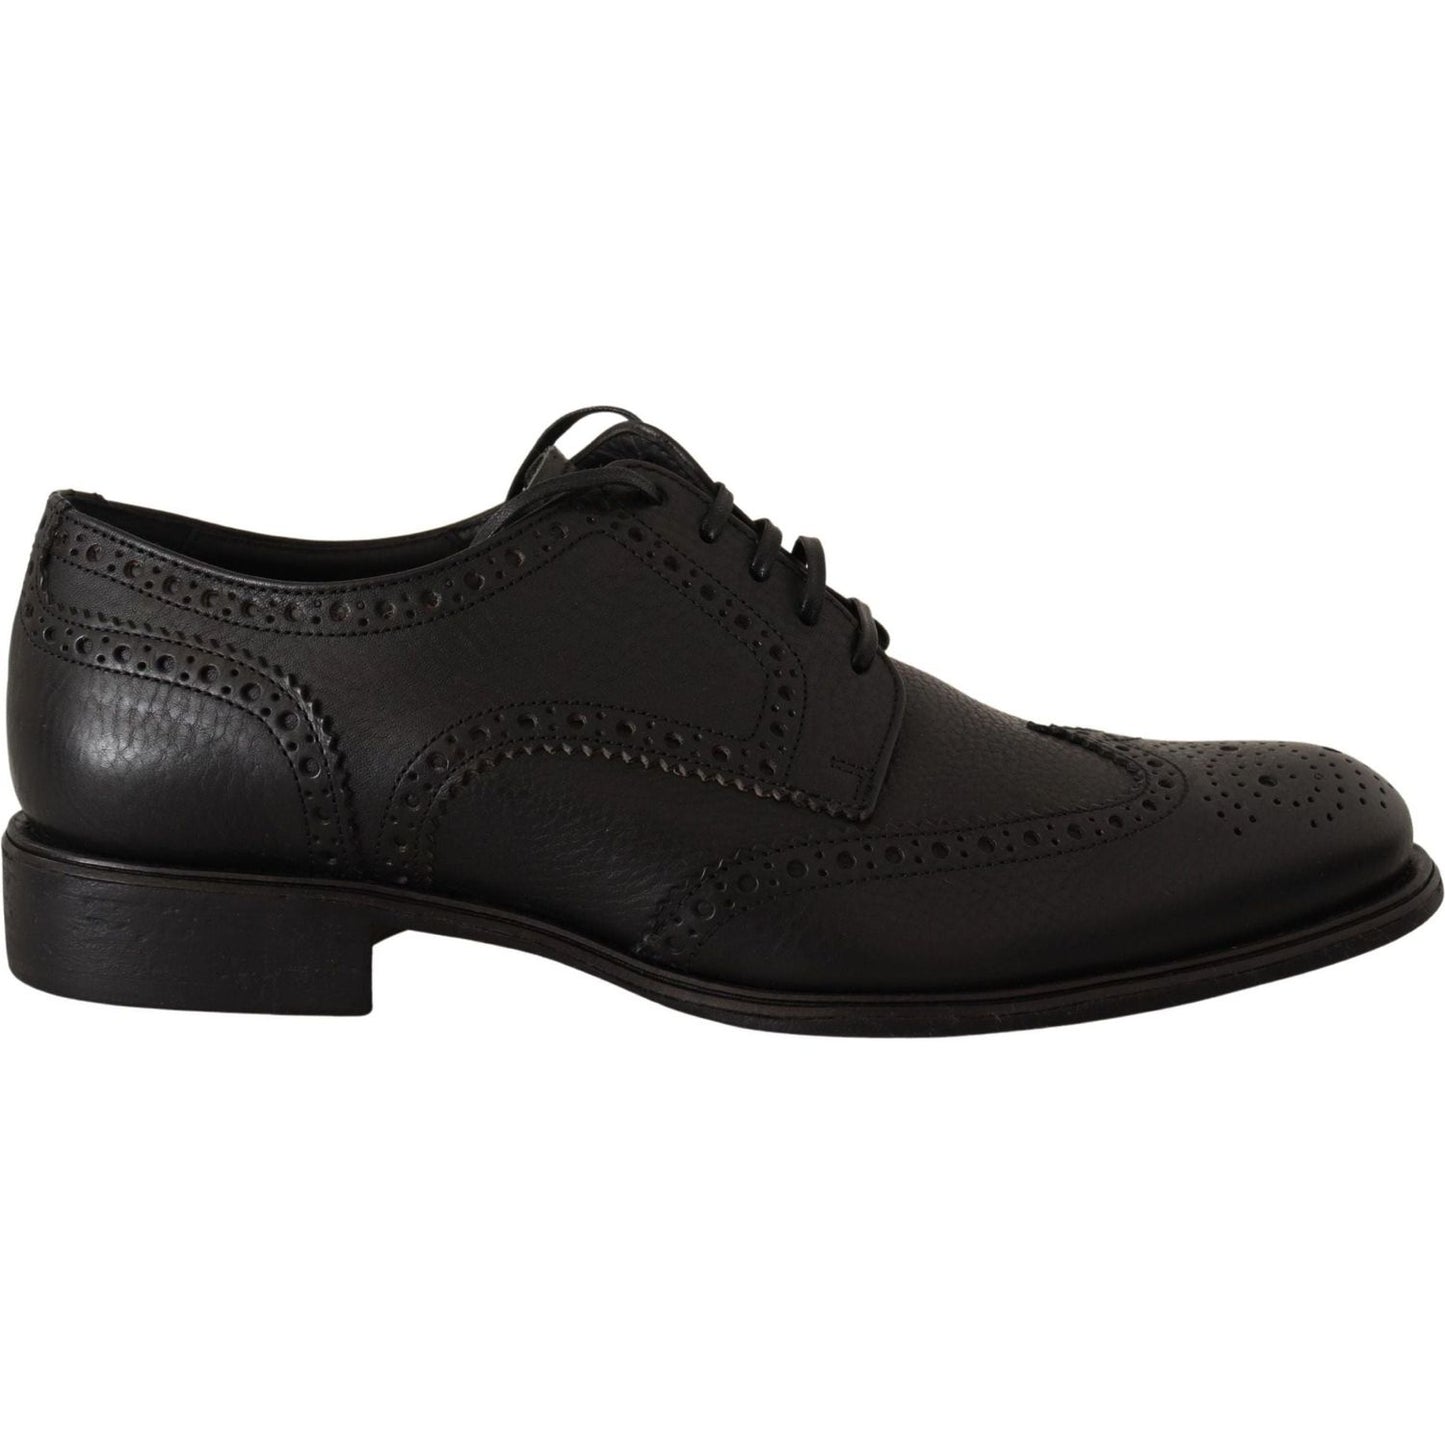 Dolce & Gabbana Elegant Black Leather Derby Wingtip Shoes black-leather-oxford-wingtip-formal-dress-shoes-1 IMG_4908-scaled-ea69e509-303.jpg